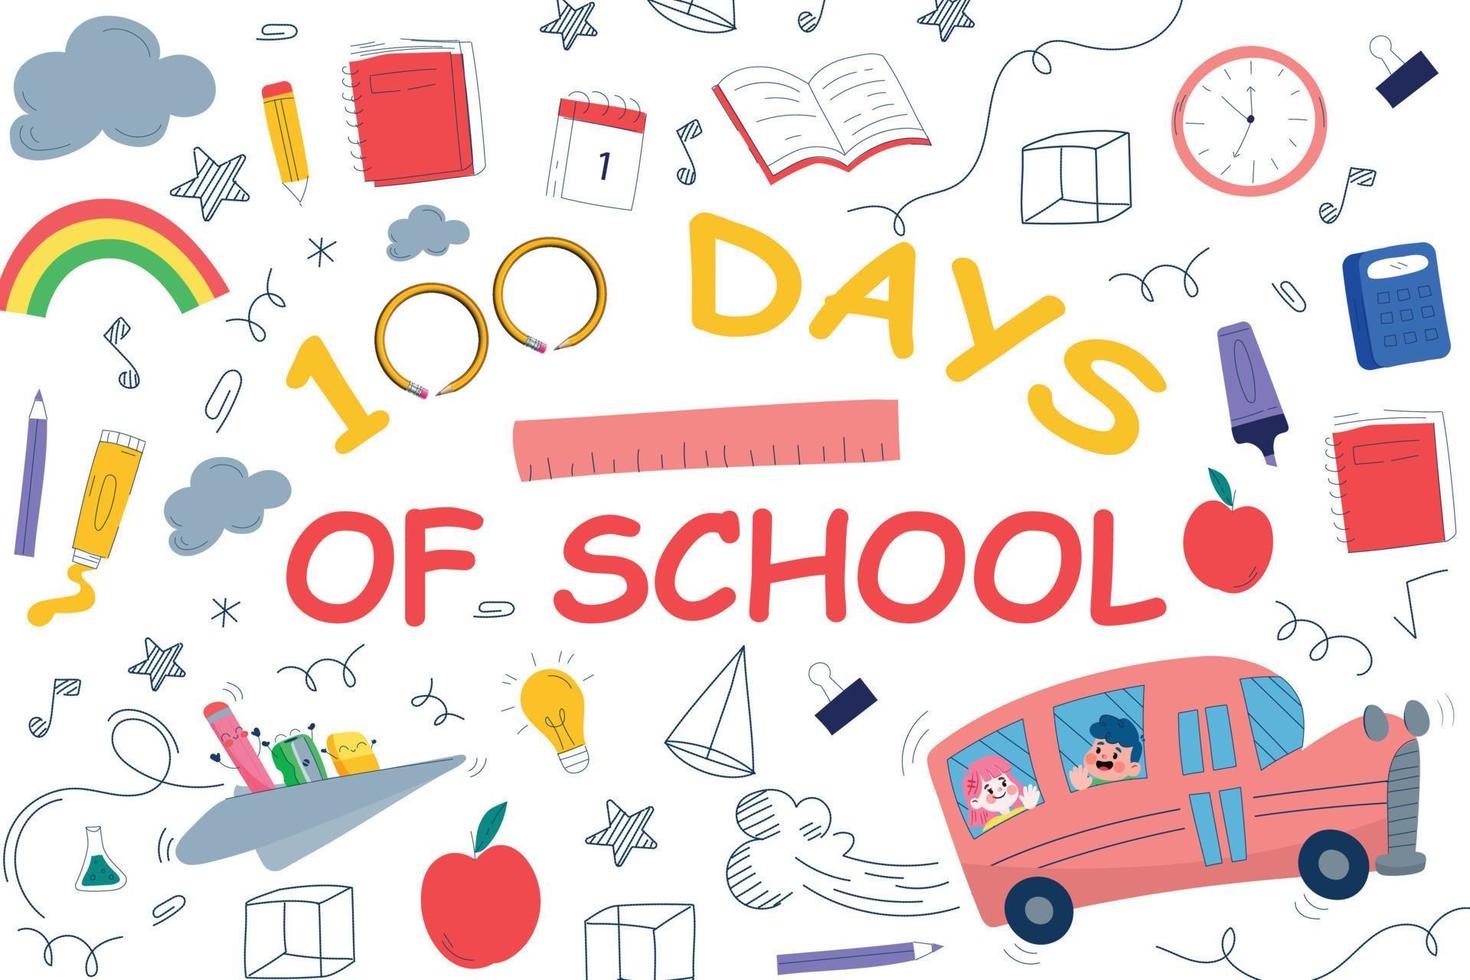 100 dagar av skola barn design, 100 dagar av skola vektor, 100 dagar av skola, 100 dagar av skola barn design affisch, design för barn vektor